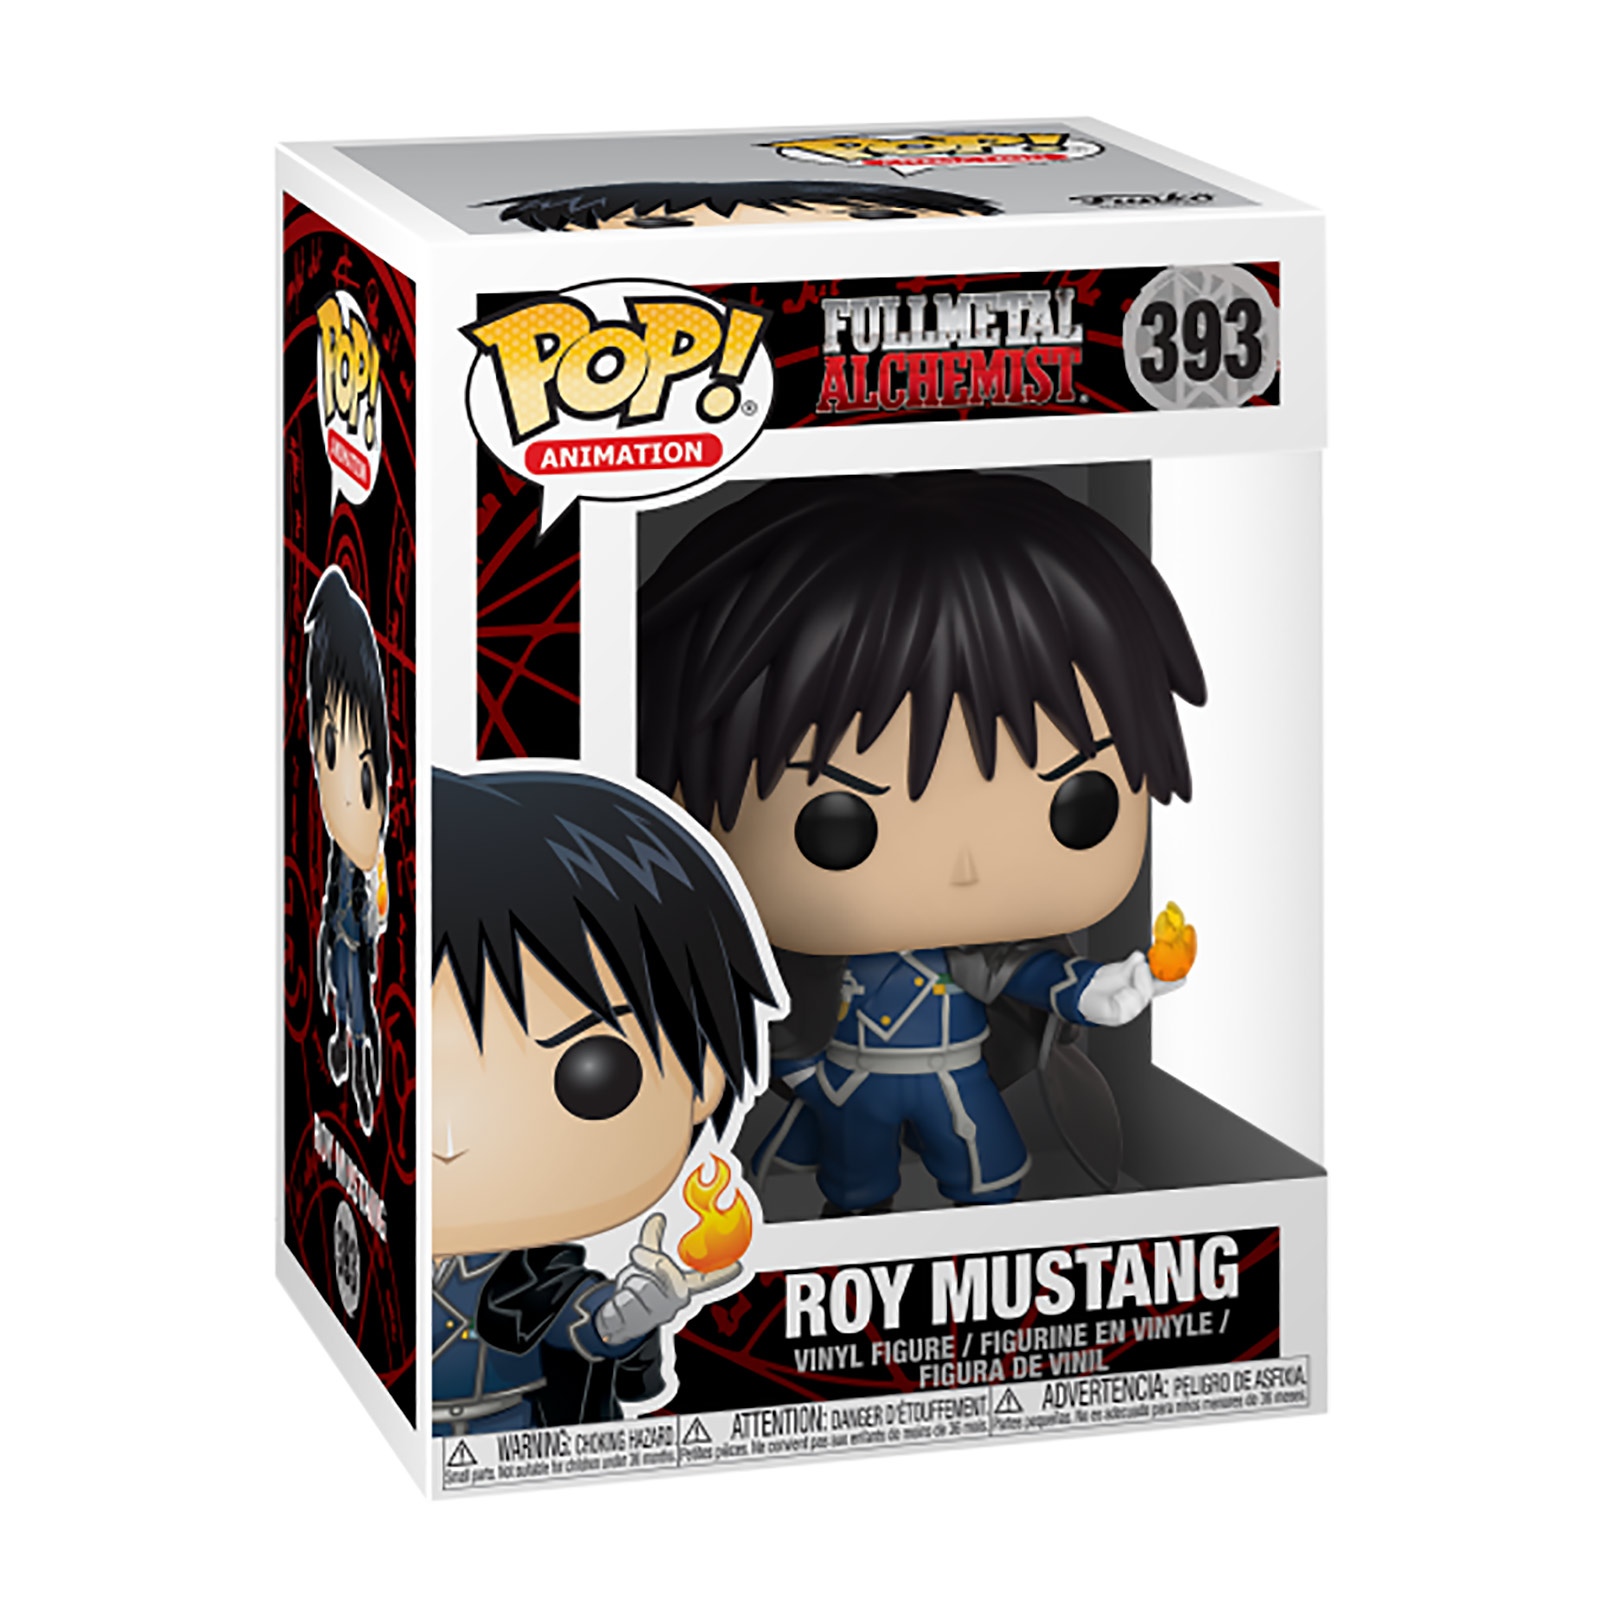 Fullmetal Alchemist - Roy Mustang Funko Pop Figure